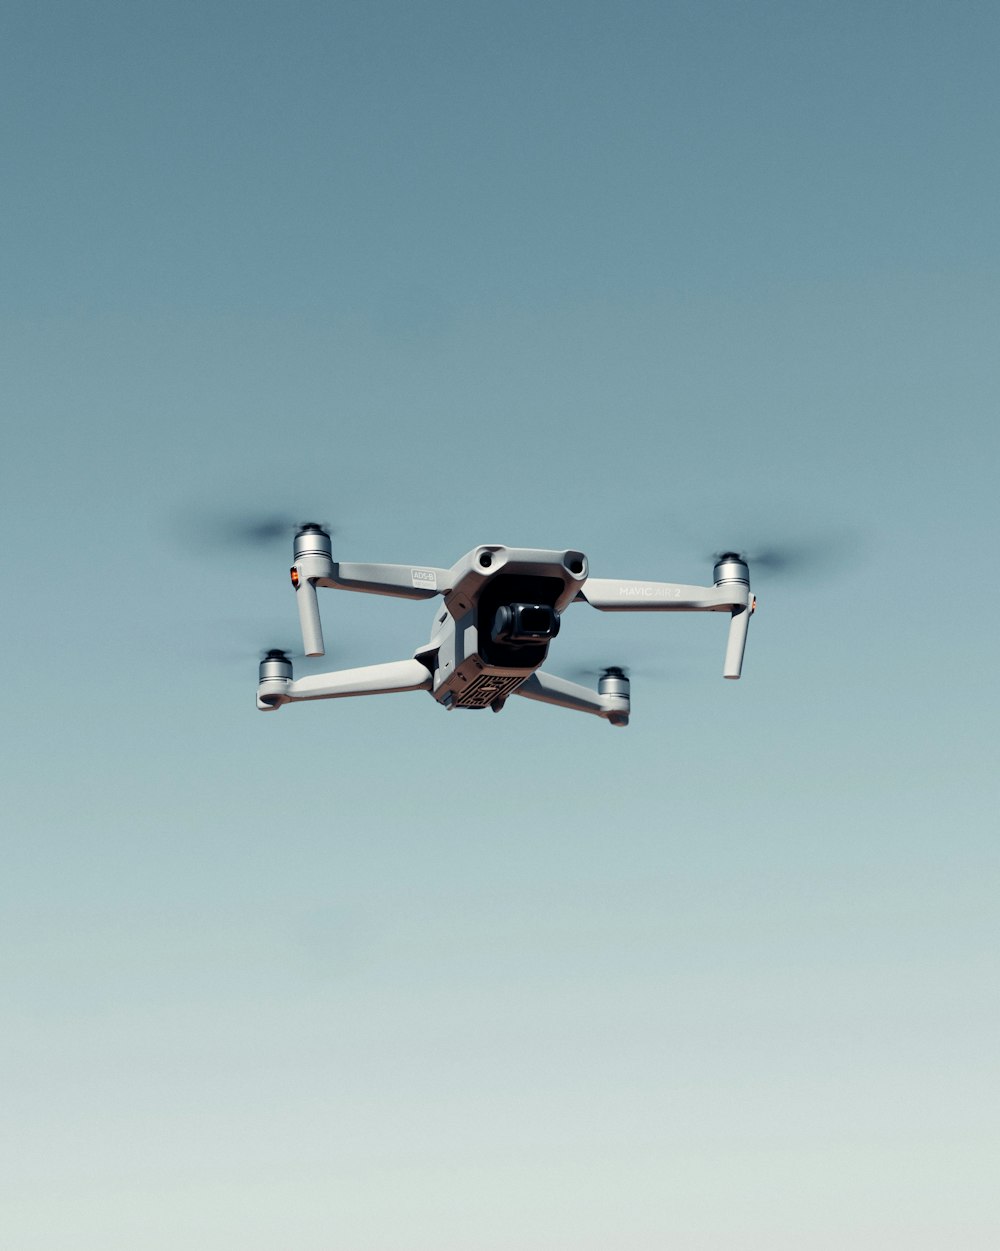 Drone noir et blanc volant sous un ciel bleu pendant la journée